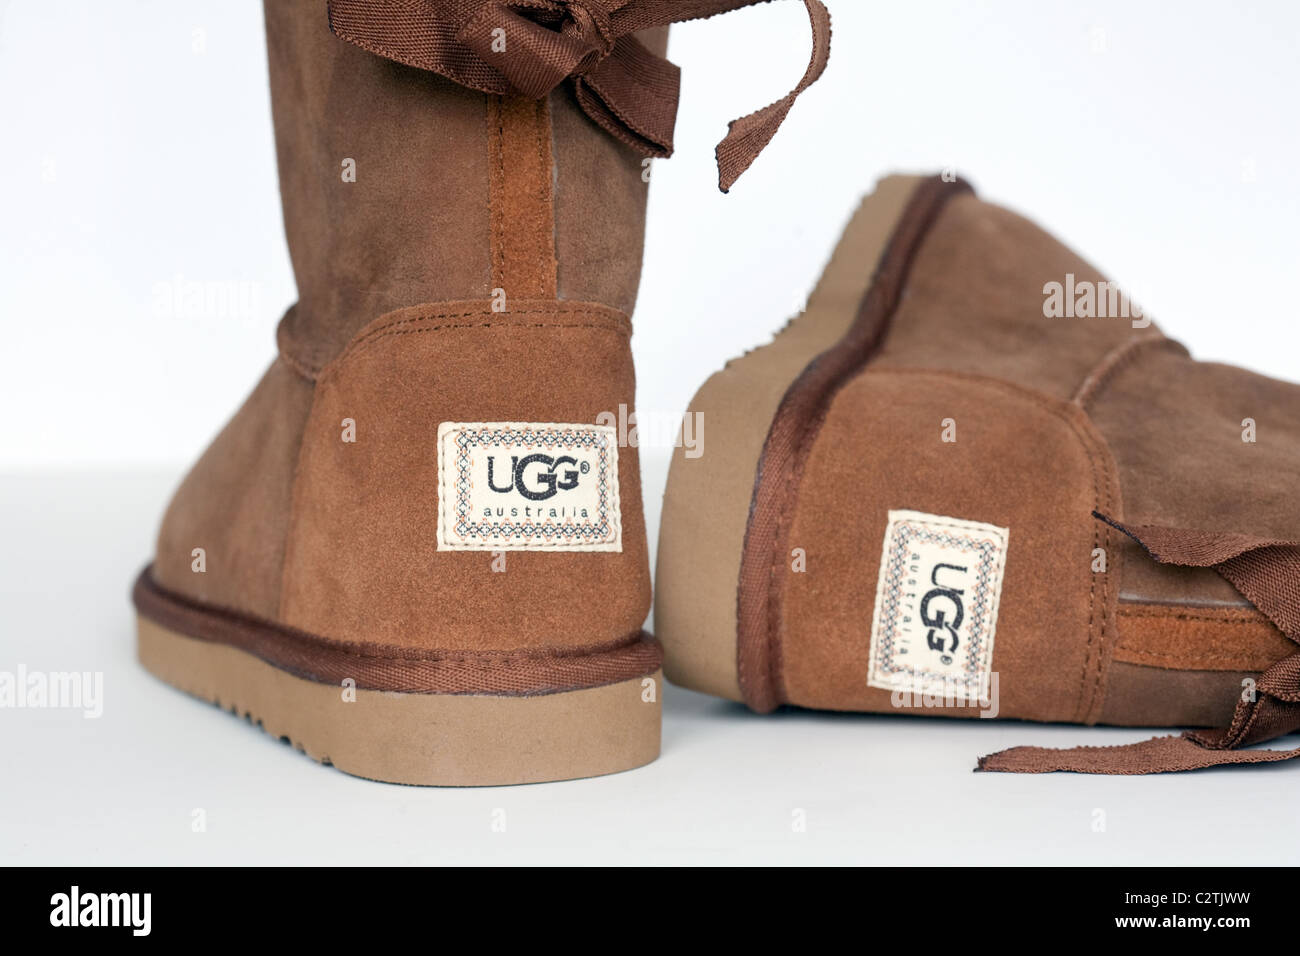 Une paire de bottes Ugg contrefaits fabriqués en Chine Photo Stock - Alamy